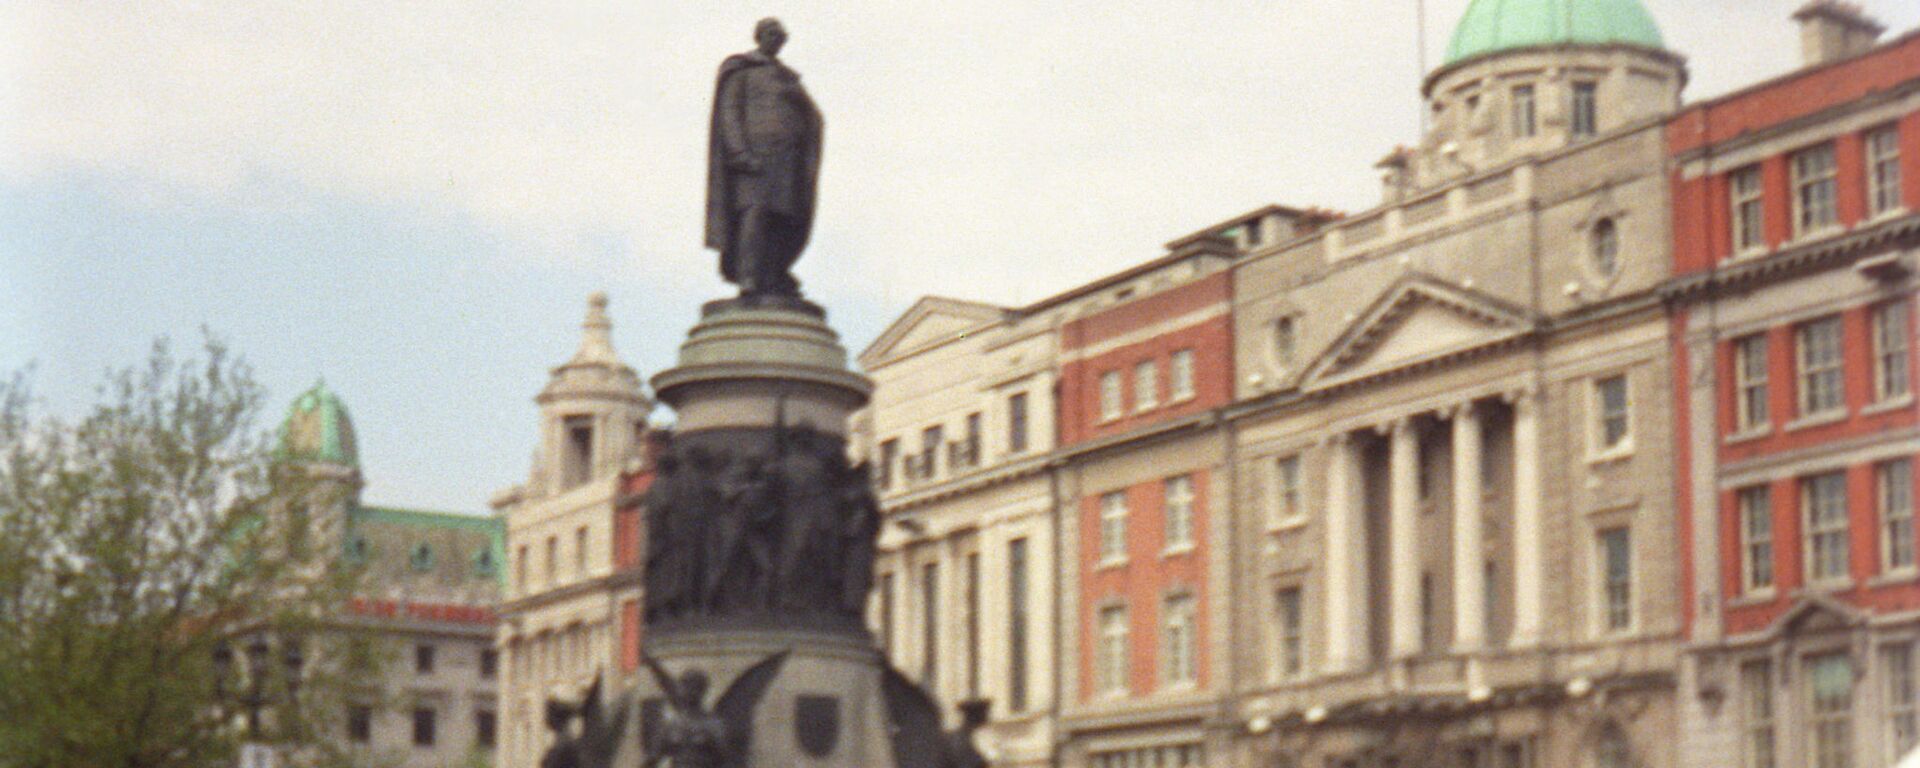 Памятник ирландскому политику Дэниелу О’Коннеллу работы скульпторов Джона Генри Фоли и Томаса Брока, открытый в Дублине в 1882 году. - Sputnik Армения, 1920, 19.07.2021